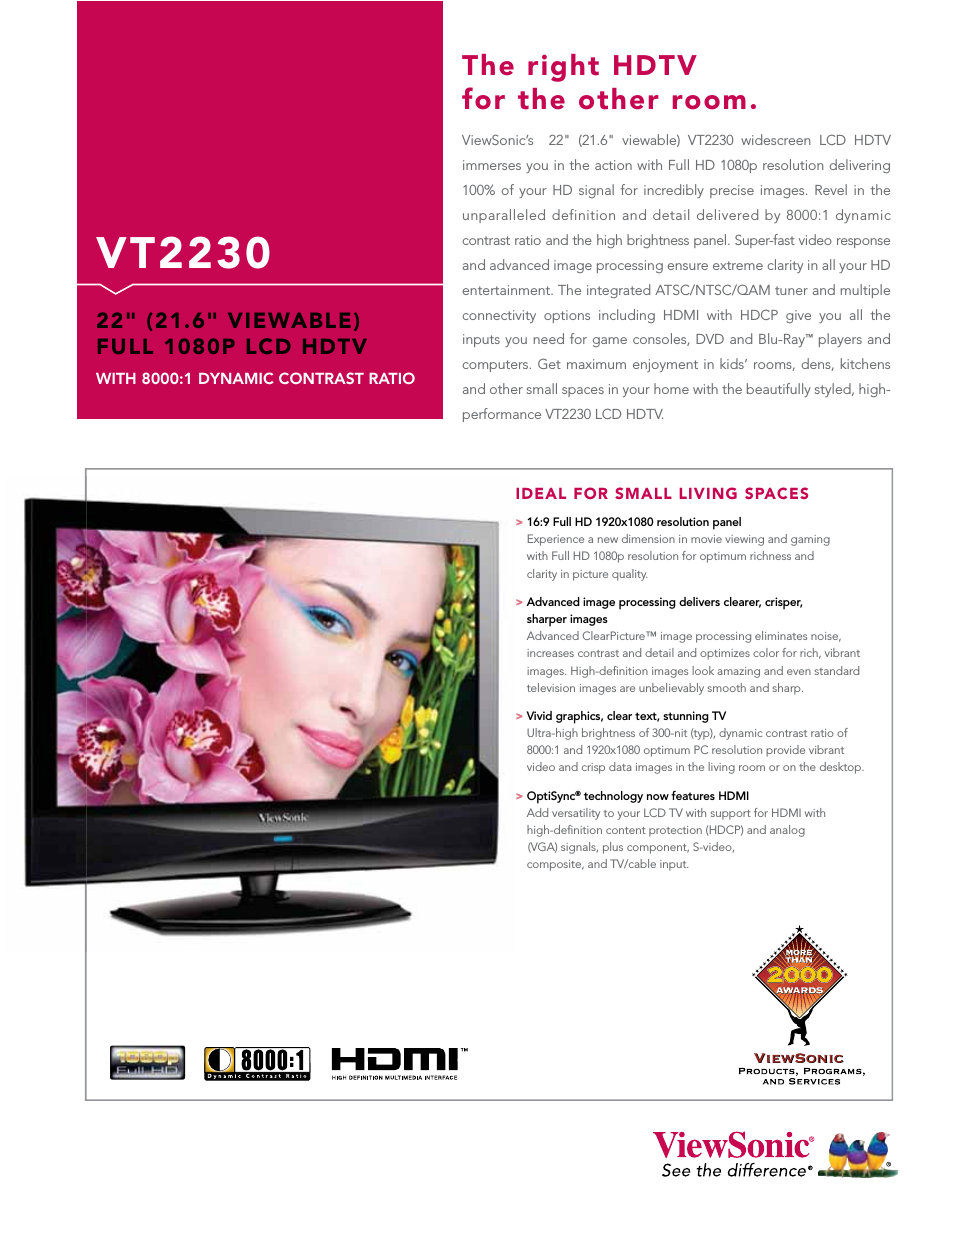 VT2230